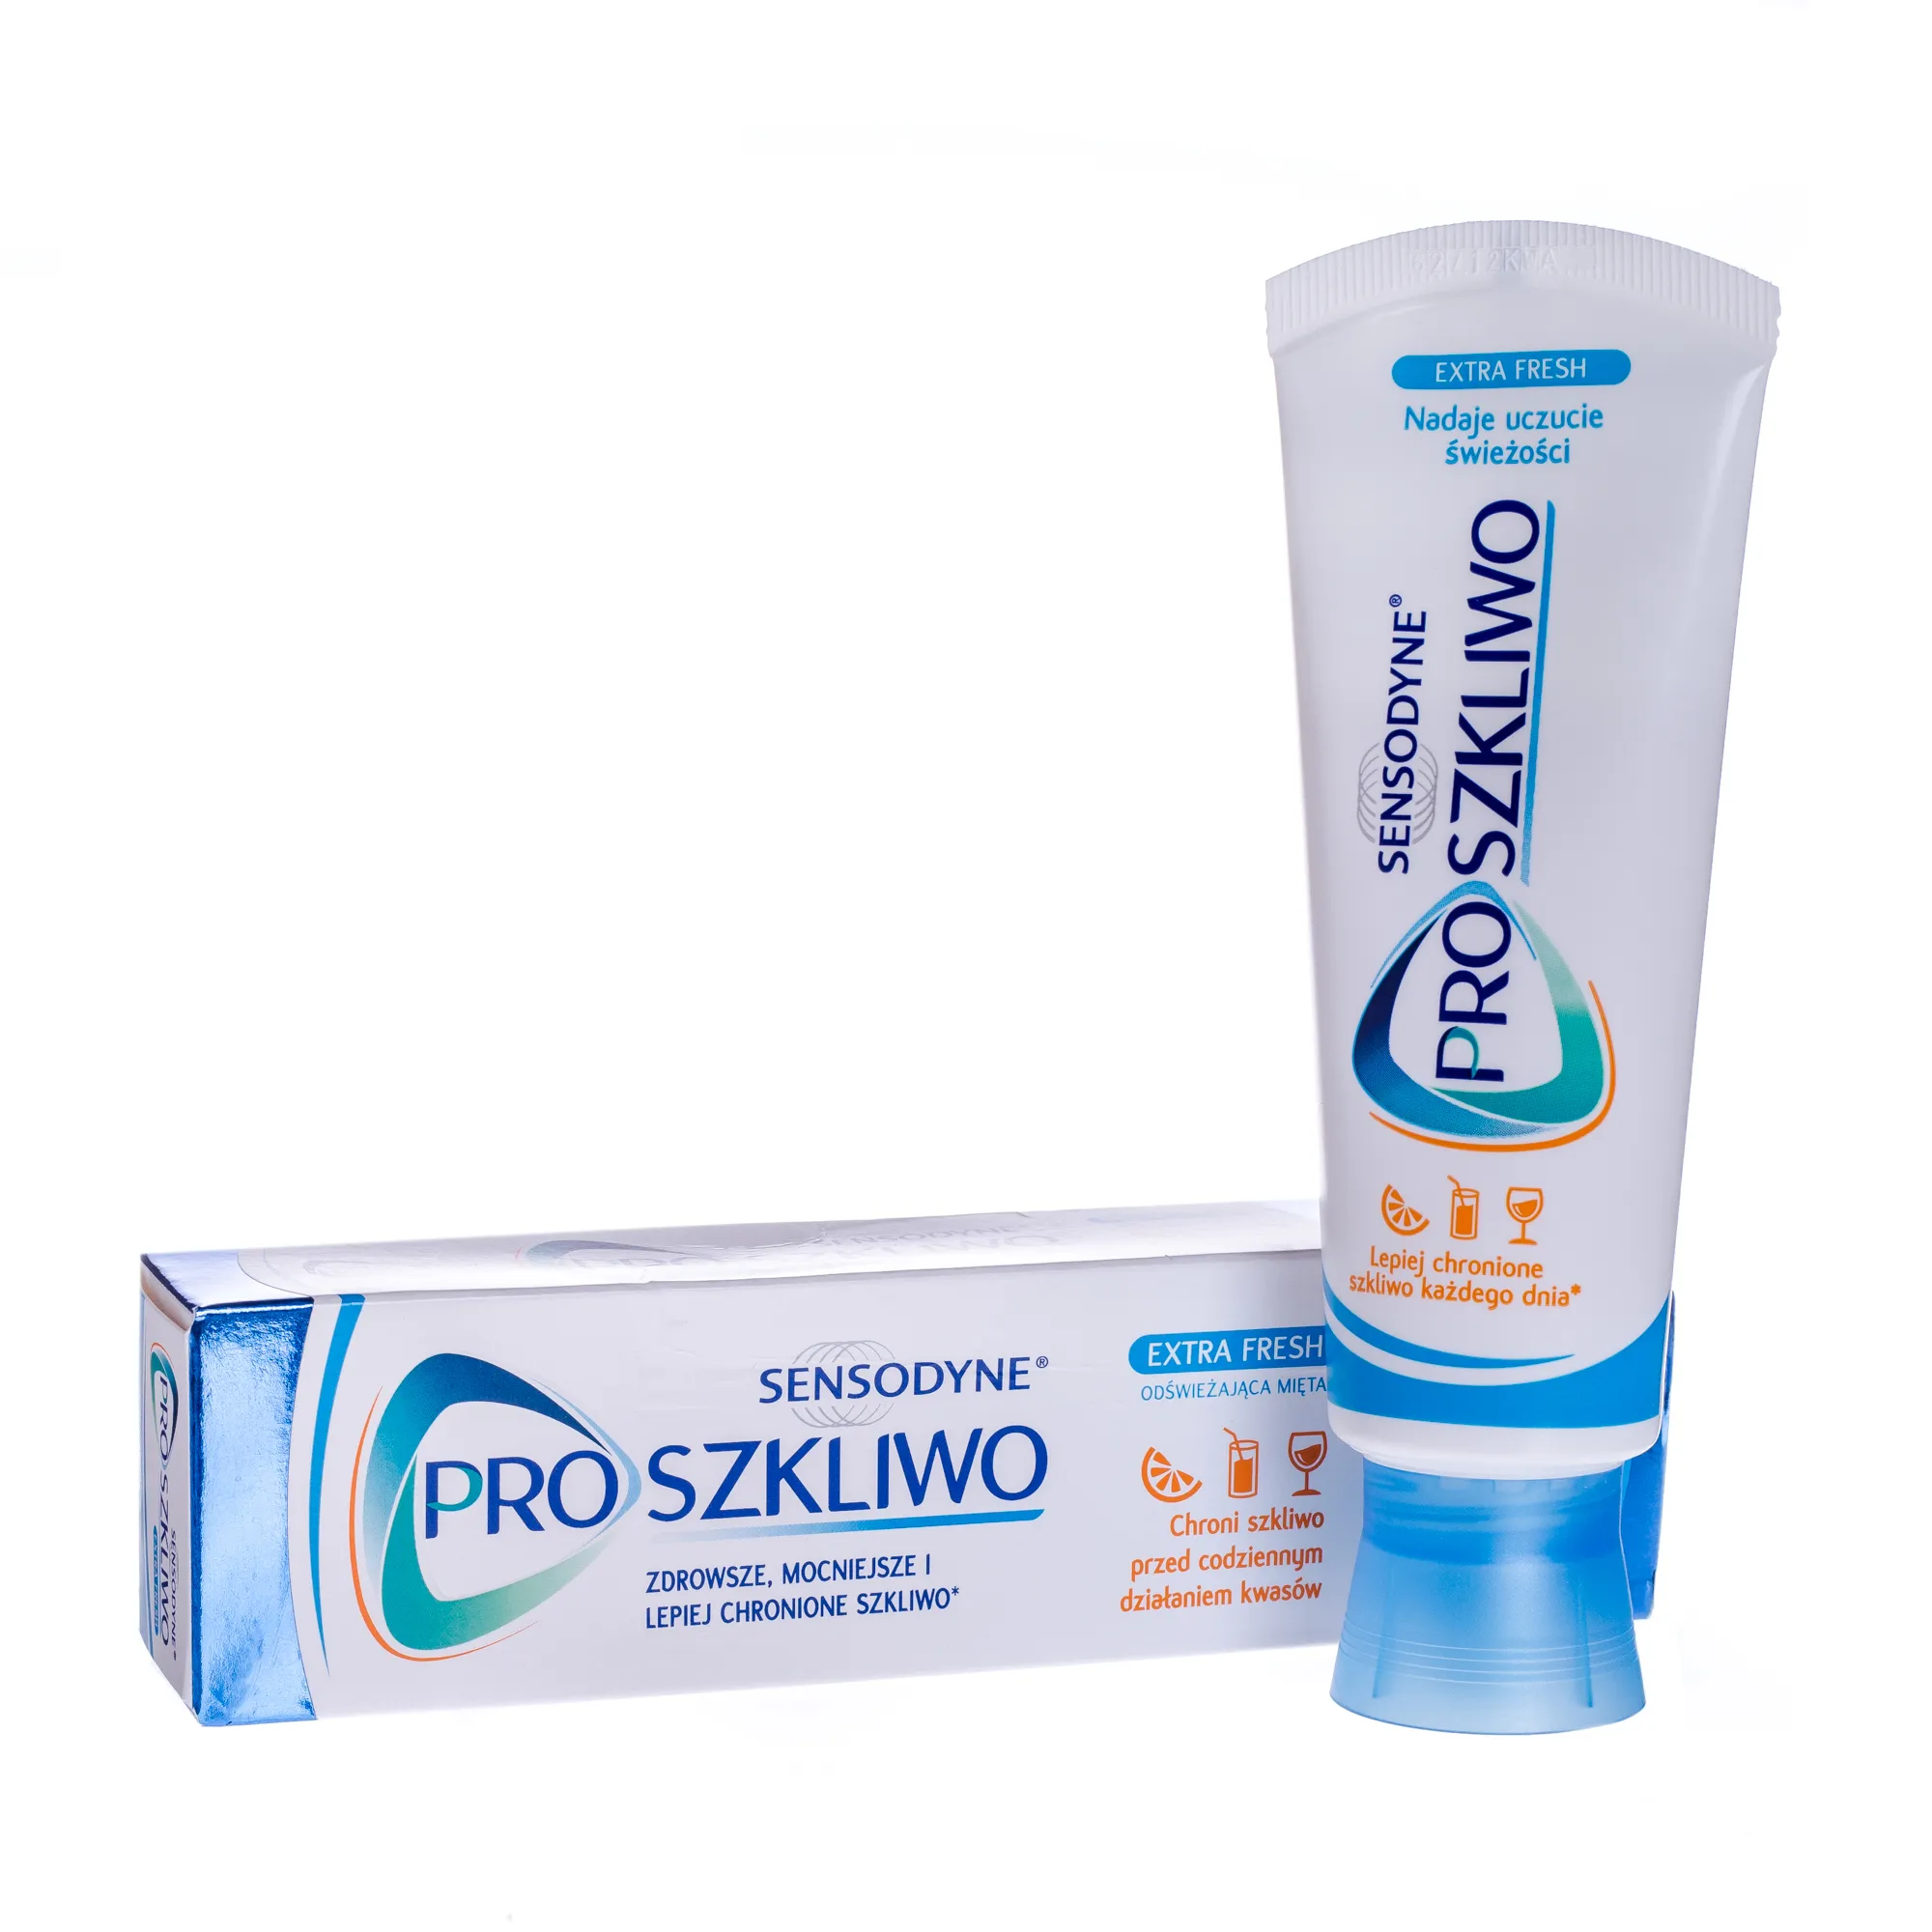 Sensodyne Pro Szkliwo Ekstra Fresh, pasta do zębów chroniąca szkliwo, 75 ml